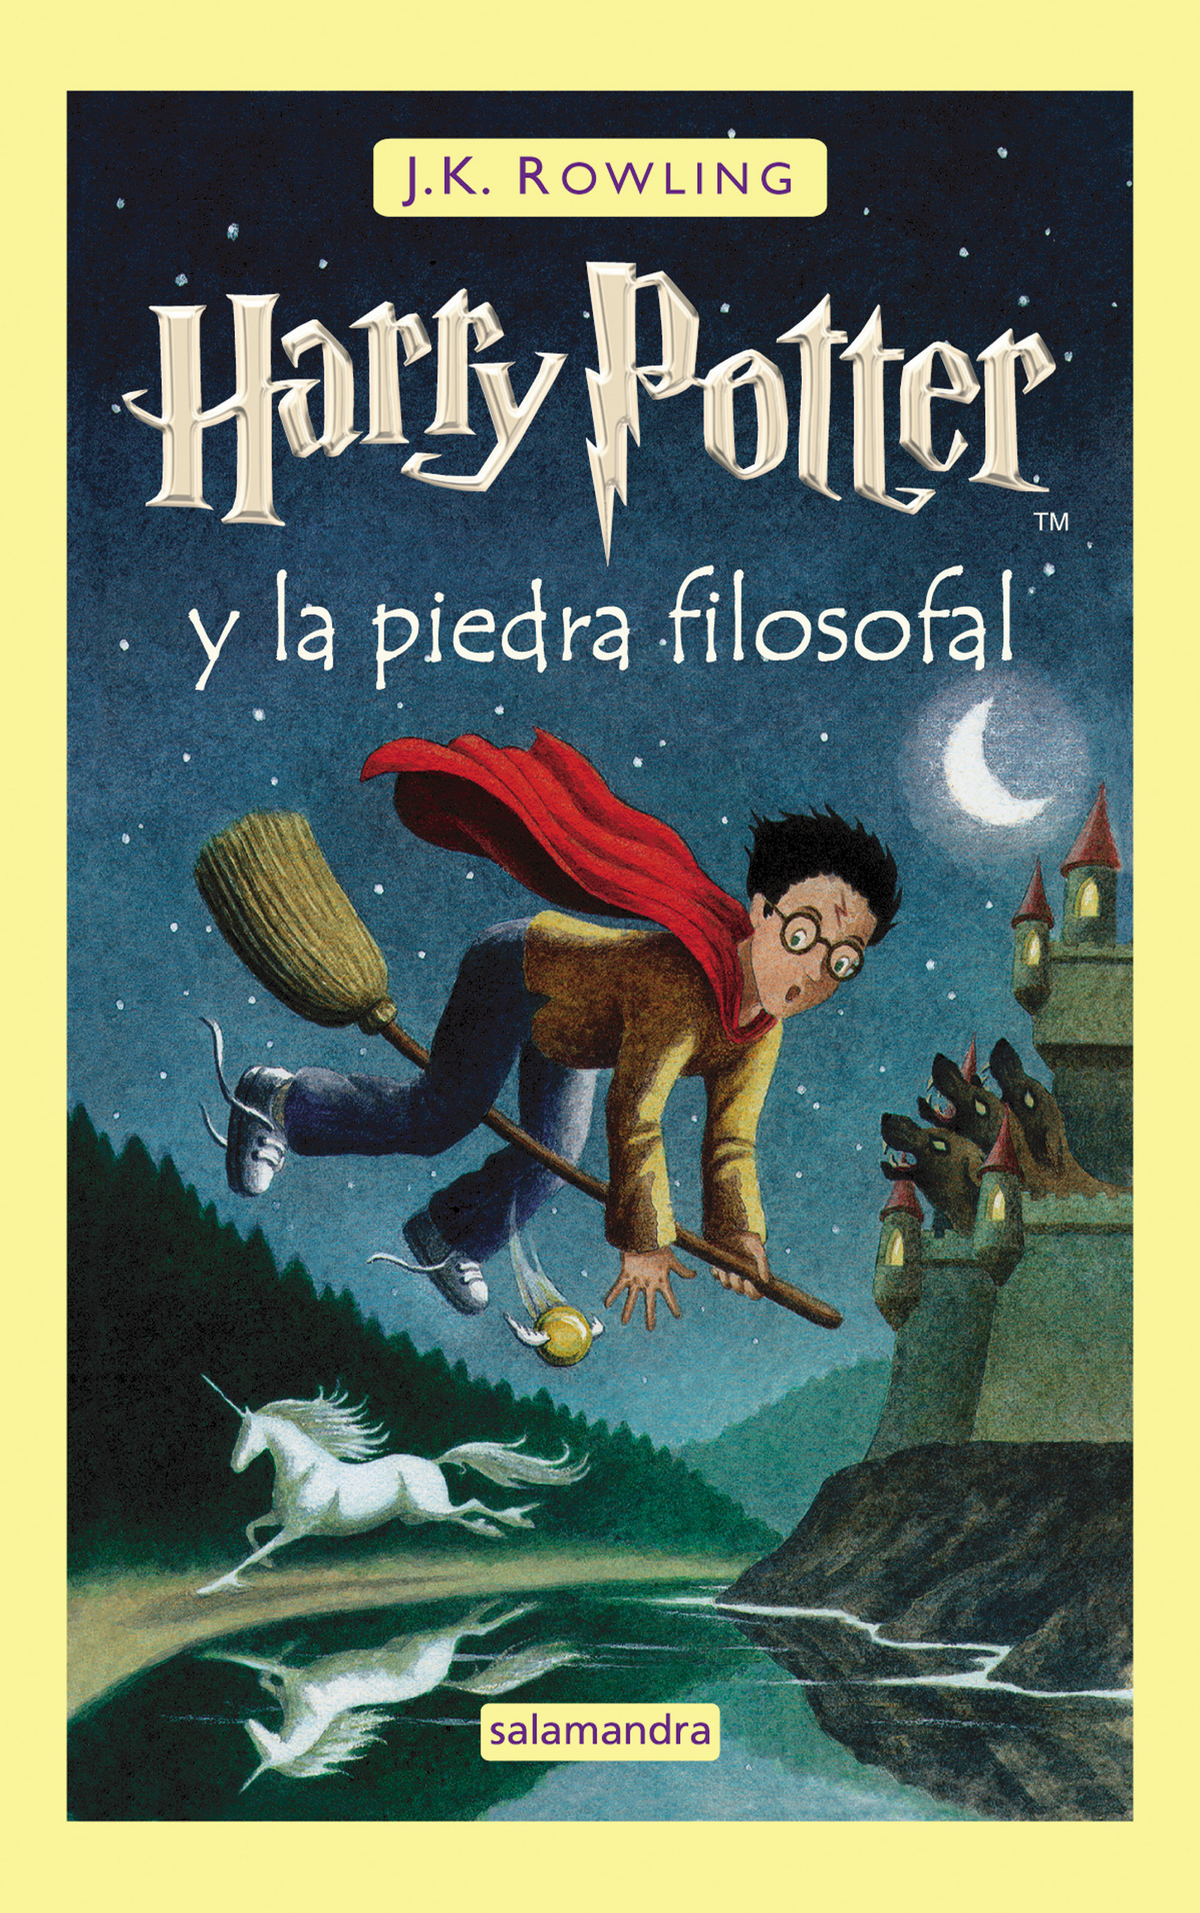 Inicio De Harry Potter Y La Camara Secreta En DVD (2003) Latinoamerica 